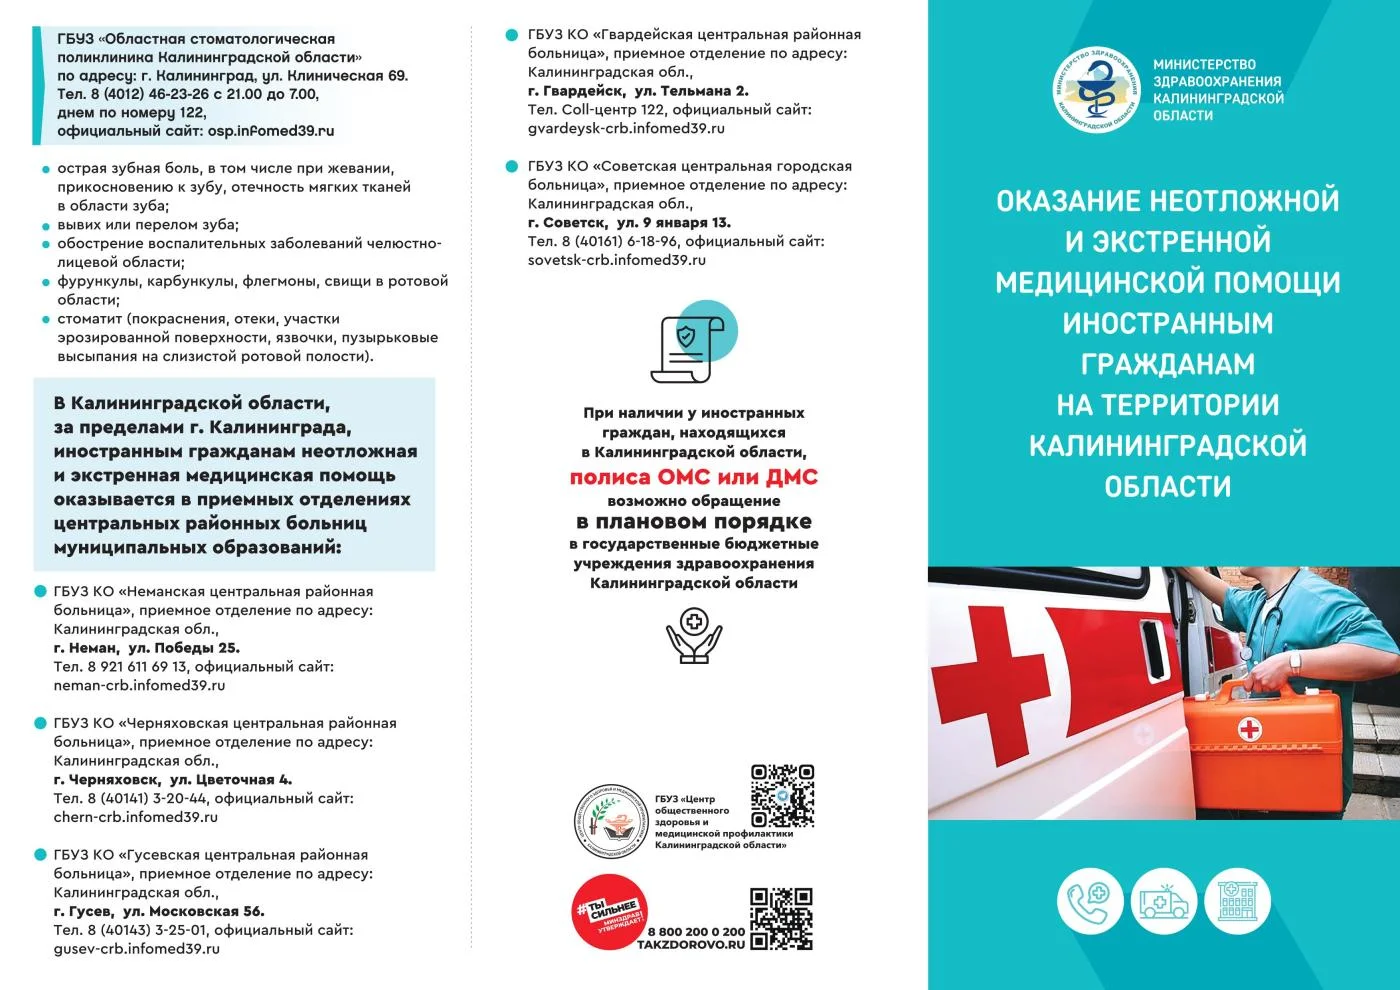 Оказание экстренной и неотложной медицинской помощи иностранным гражданам на территории Калининградской области